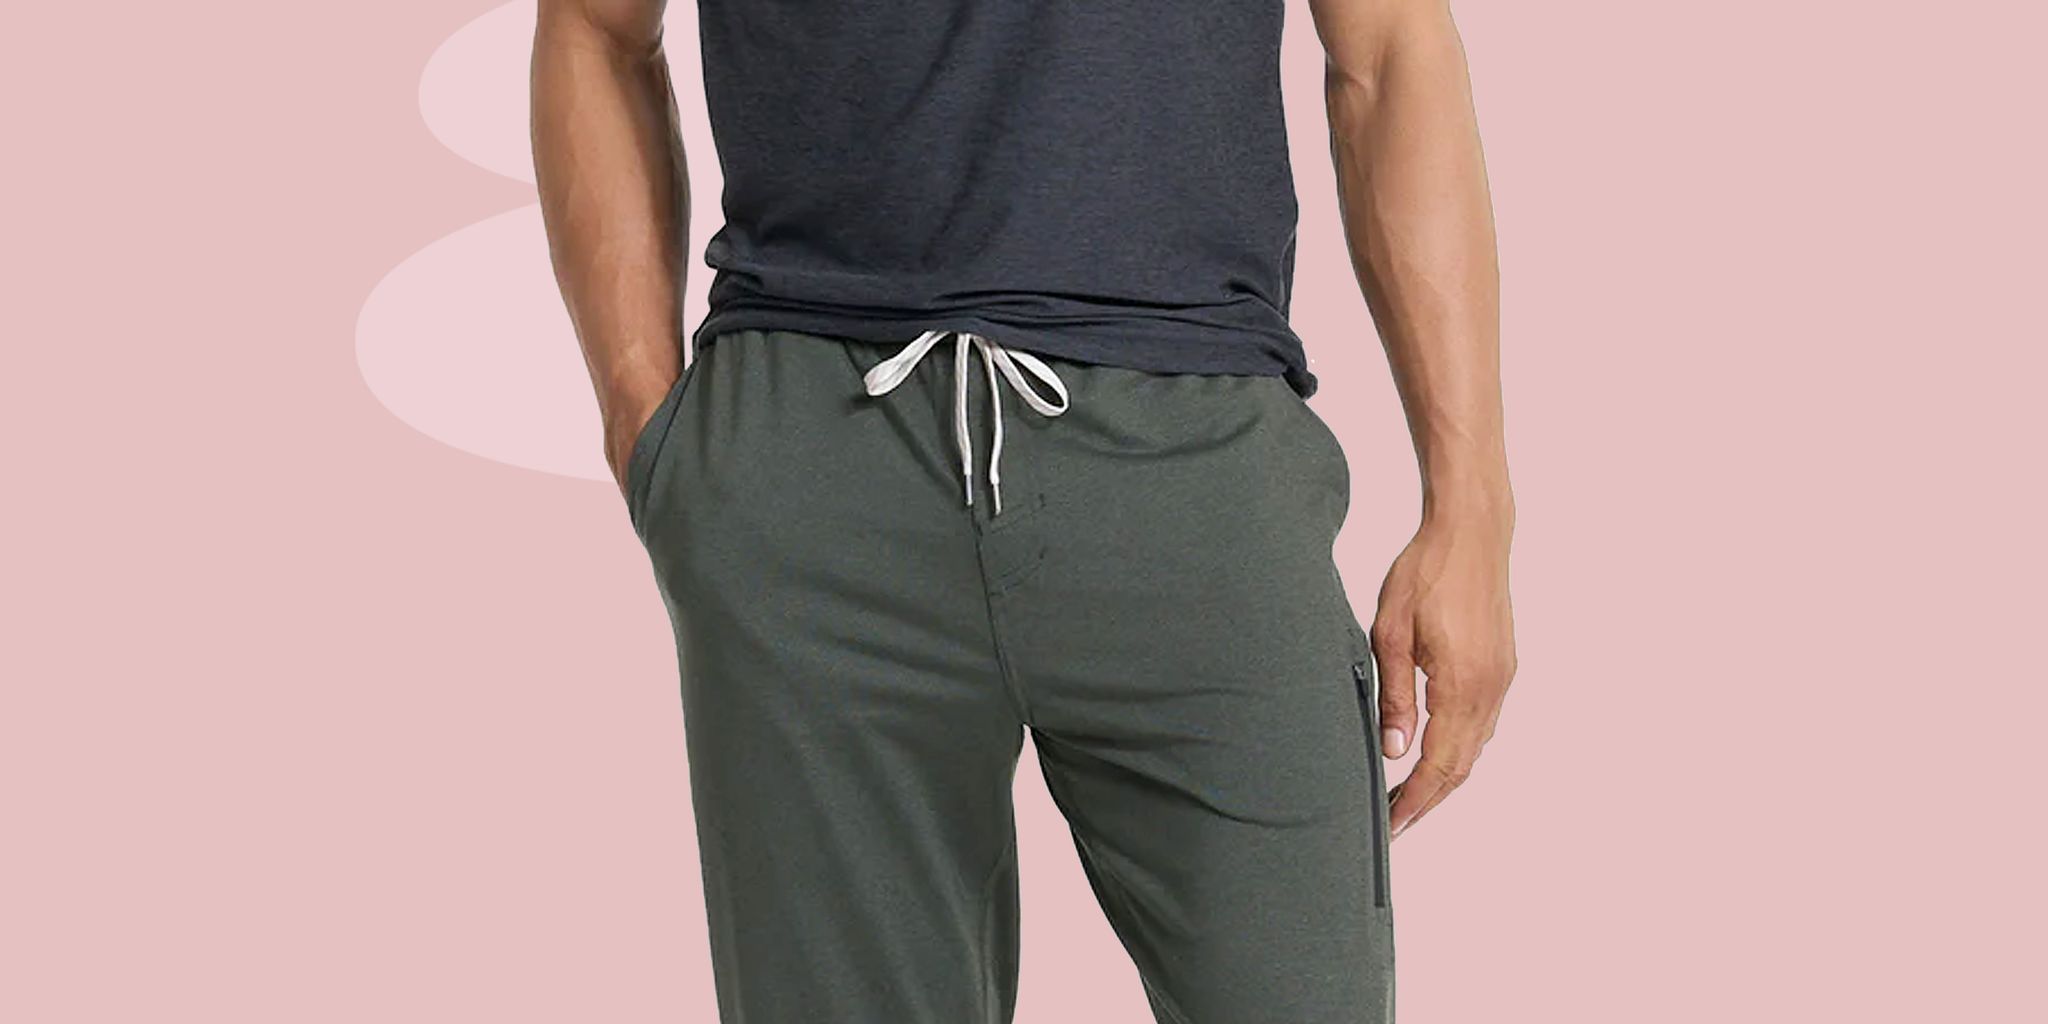 Men's Joggers Activewear Bottoms